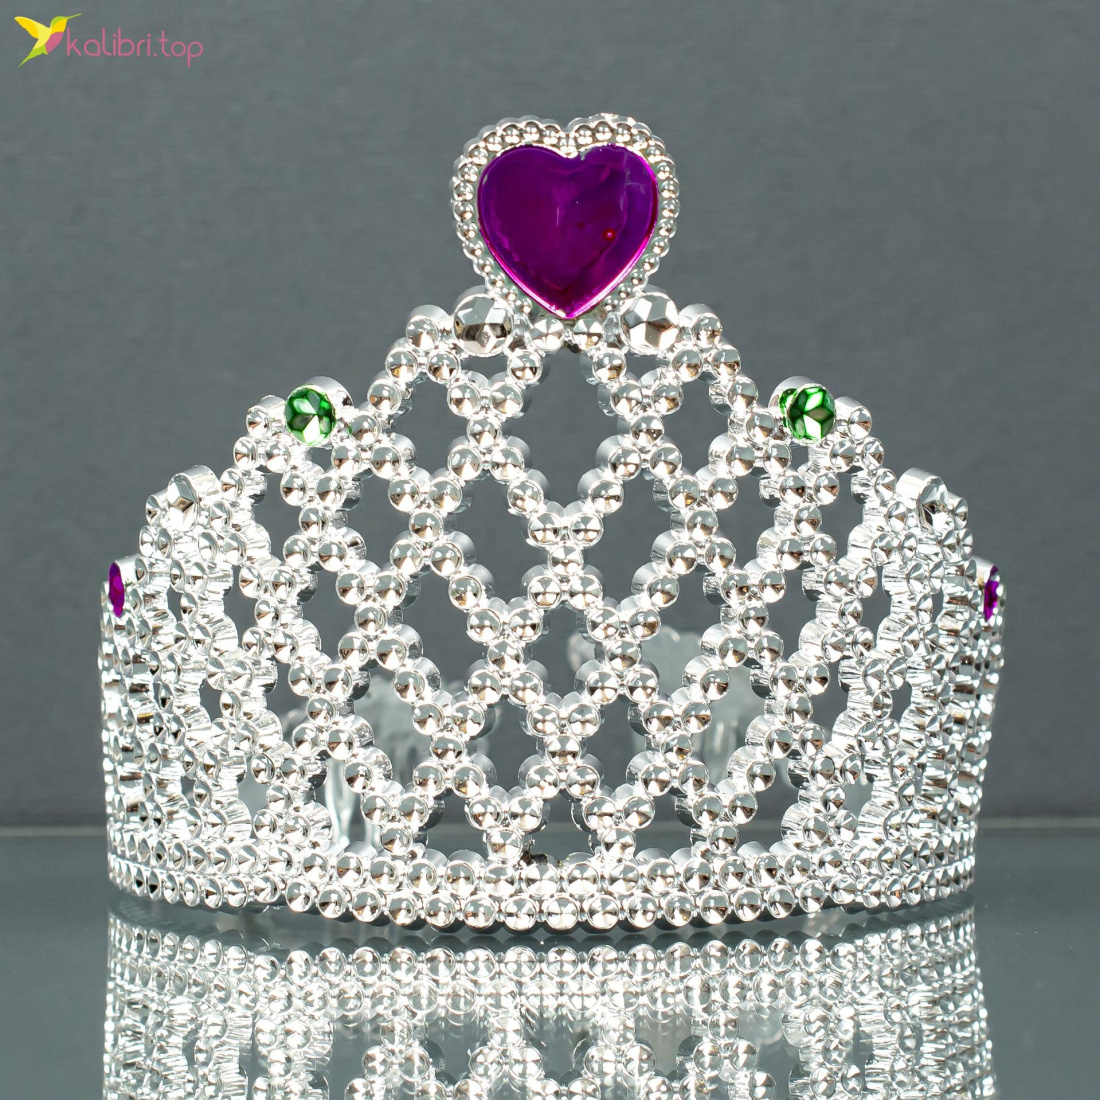 Новорічна корона Принцеса 8 см оптом фото 01